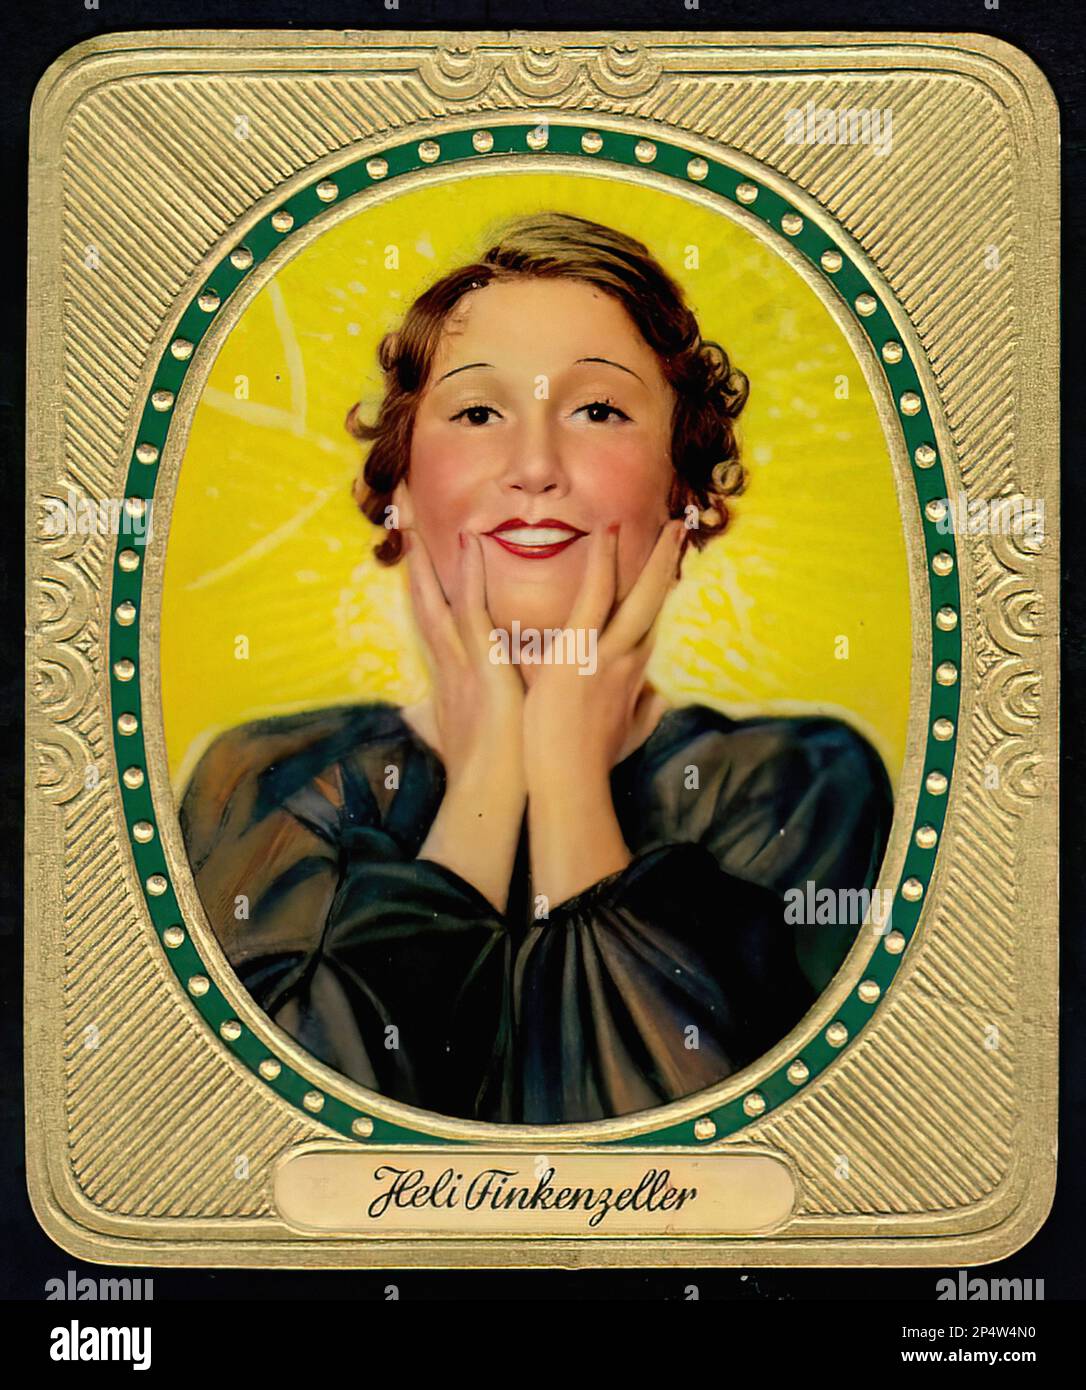 Porträt der Schauspielerin Heli Finkenzeller - alte Zigarettenkarte Stockfoto